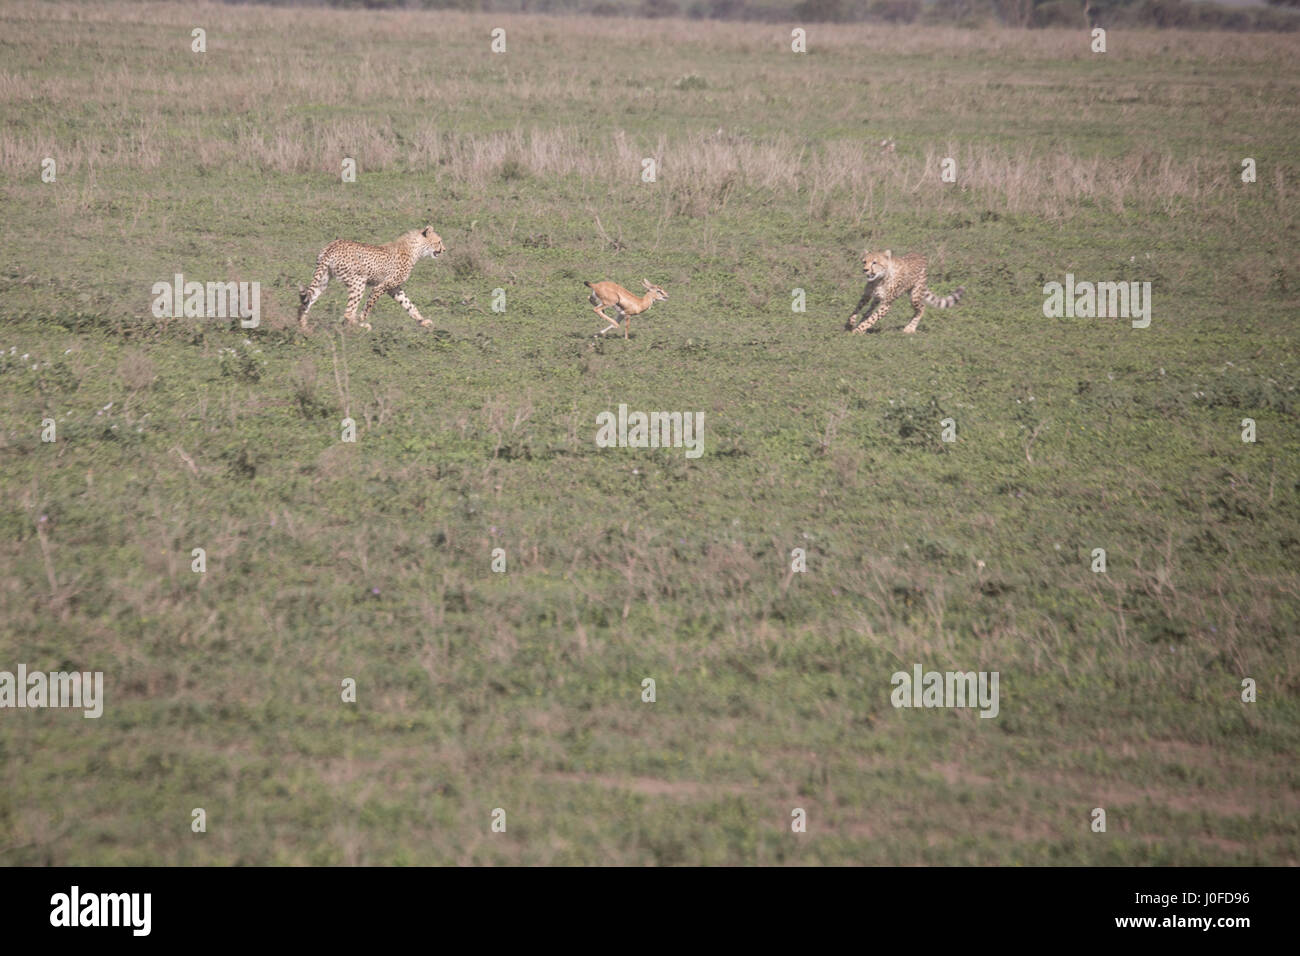 Les jeunes guépards apprennent à chasser de gazelle mère dans le Parc National du Serengeti, Tanzanie, Afrique. Banque D'Images